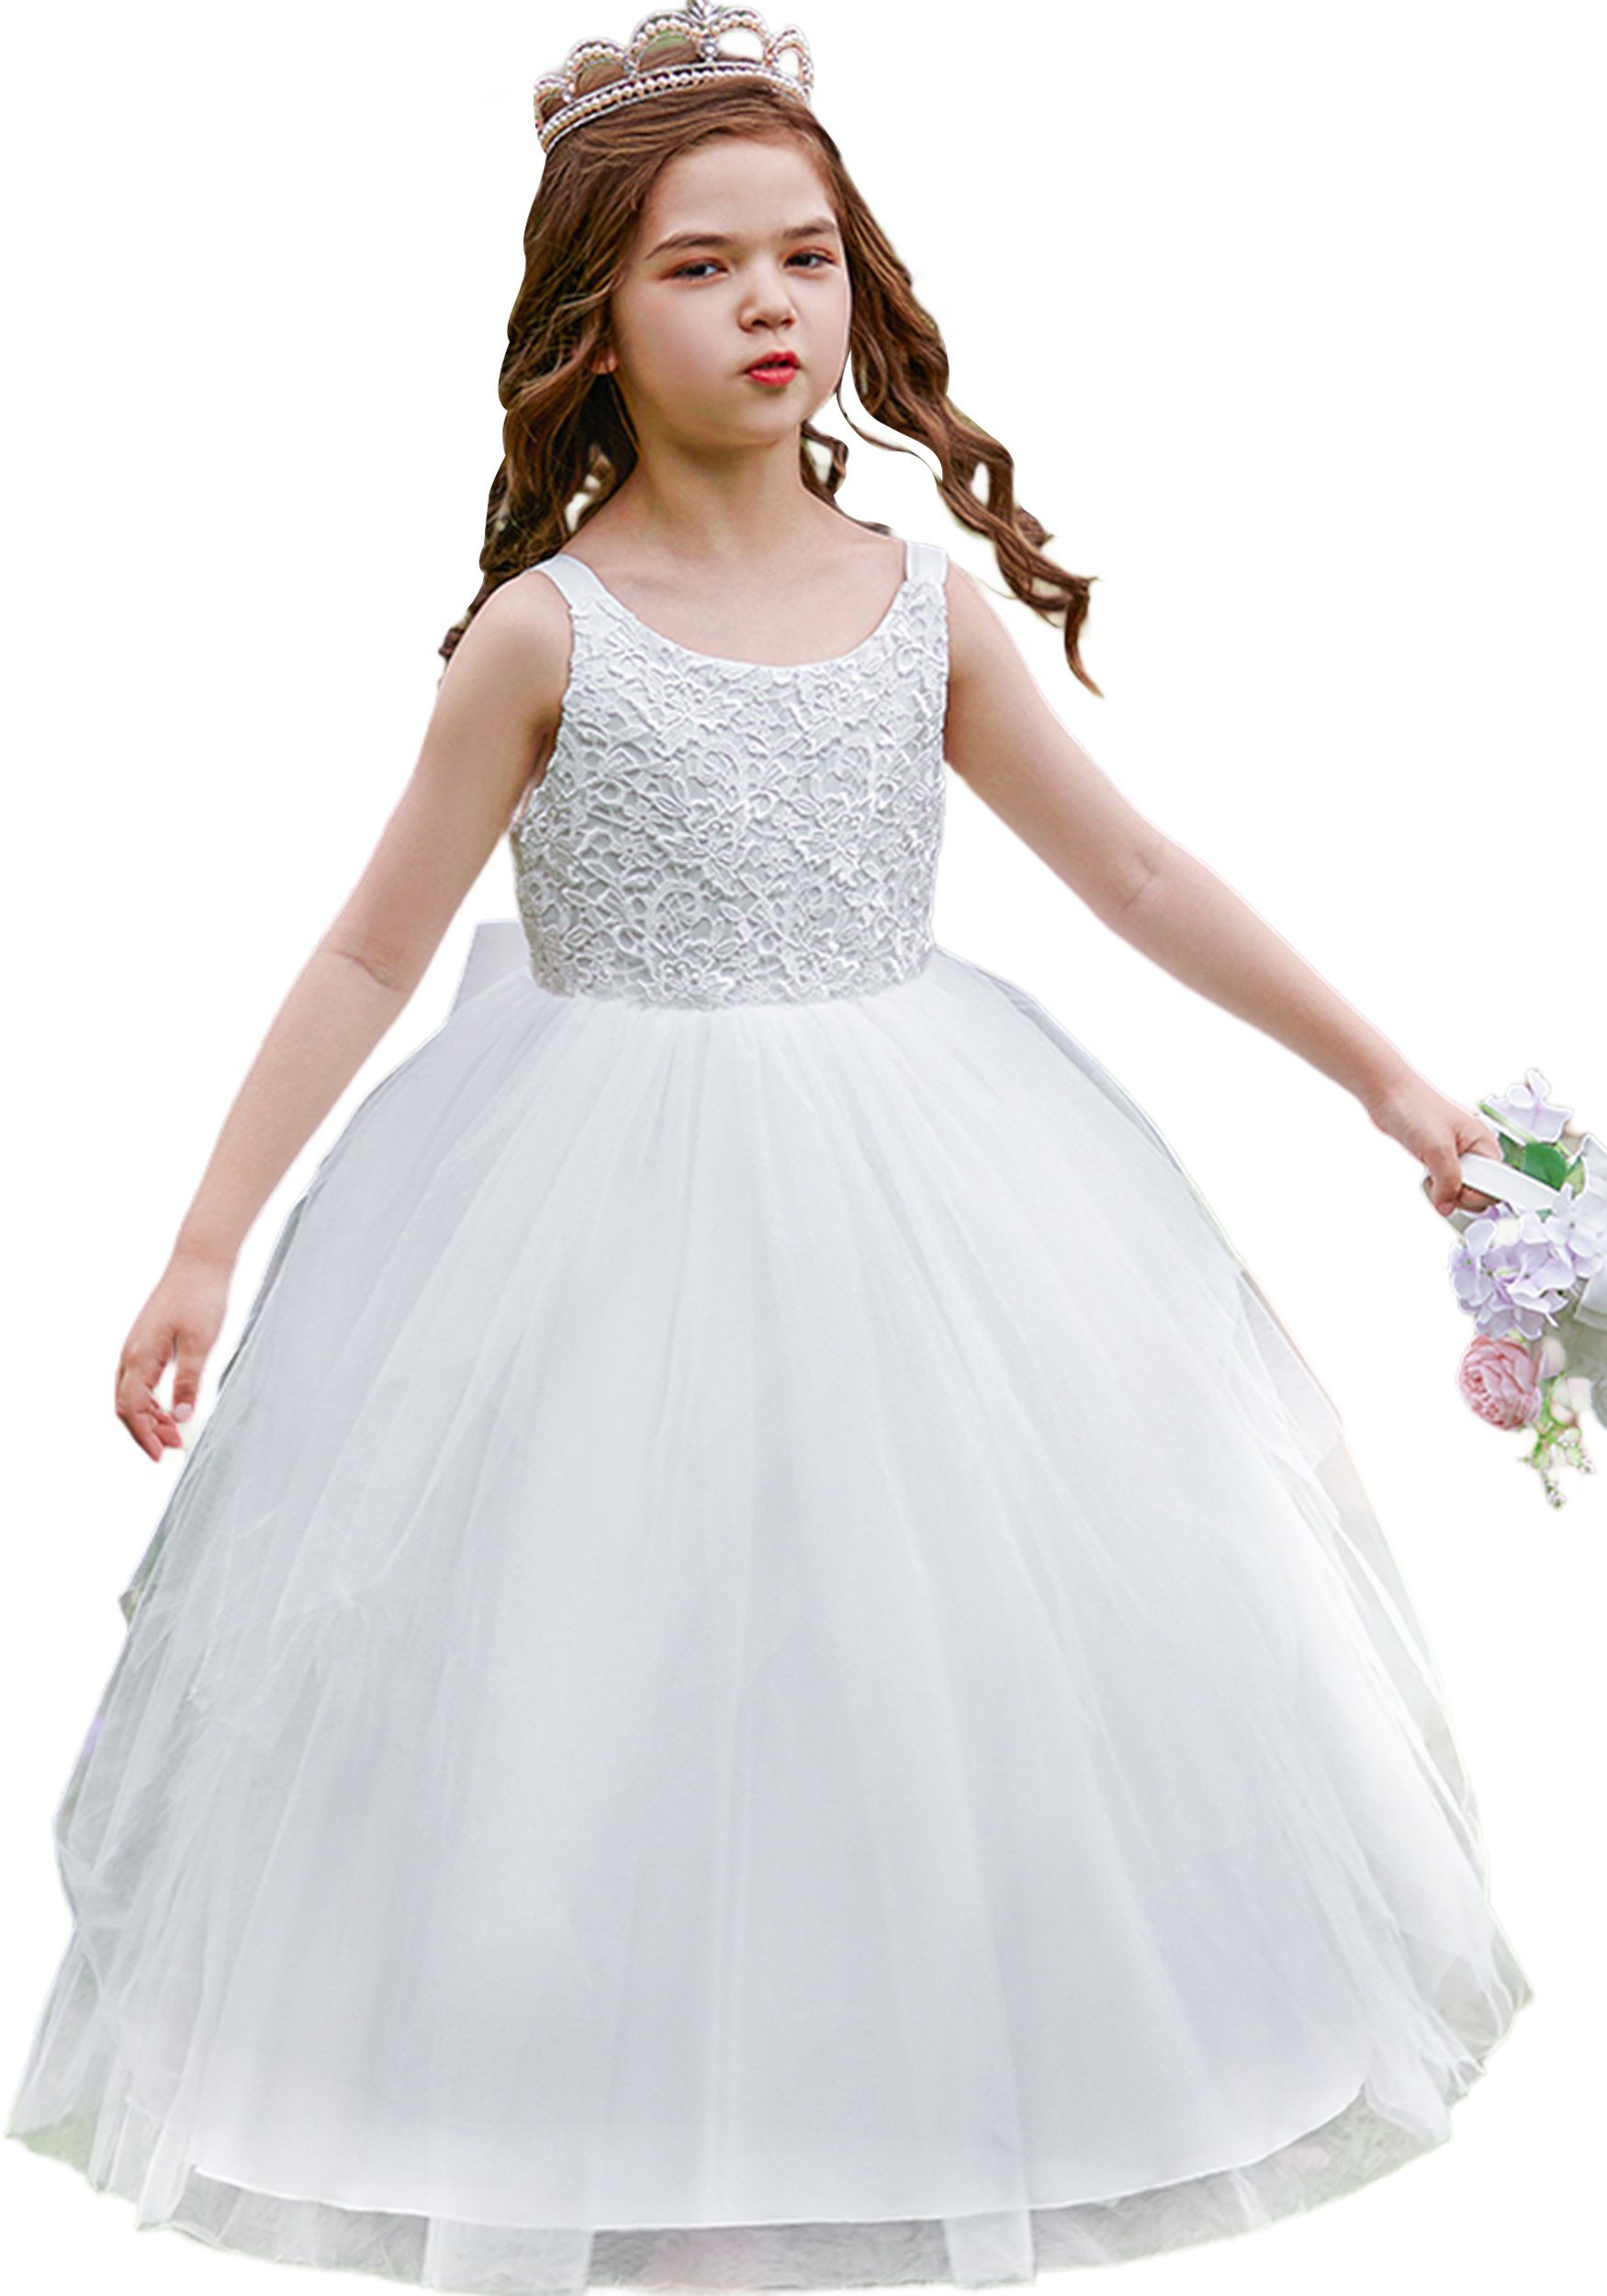 Daisred Partykleid Mädchenkleider Prinzessin Weiß Kleider Performance Kleidung